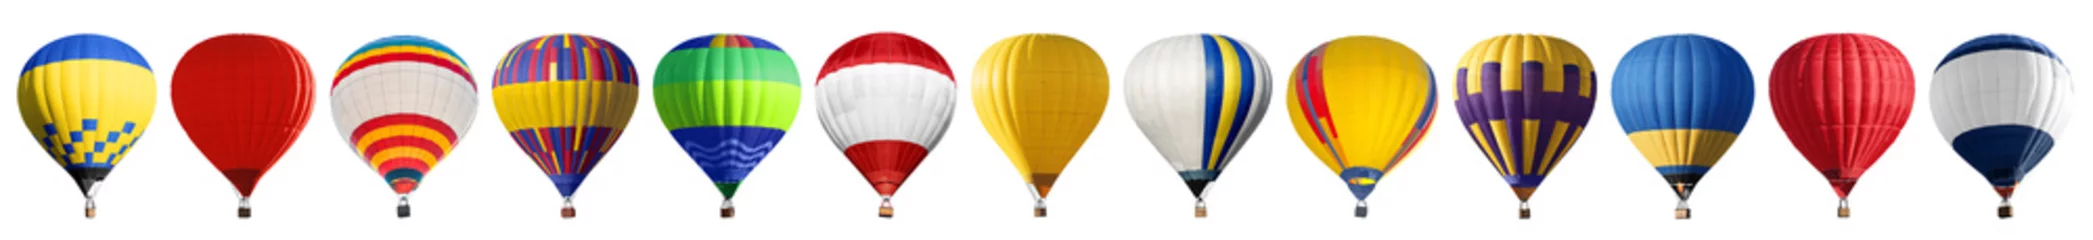 Tuinposter Set van heldere kleurrijke hete lucht ballonnen op witte achtergrond © New Africa